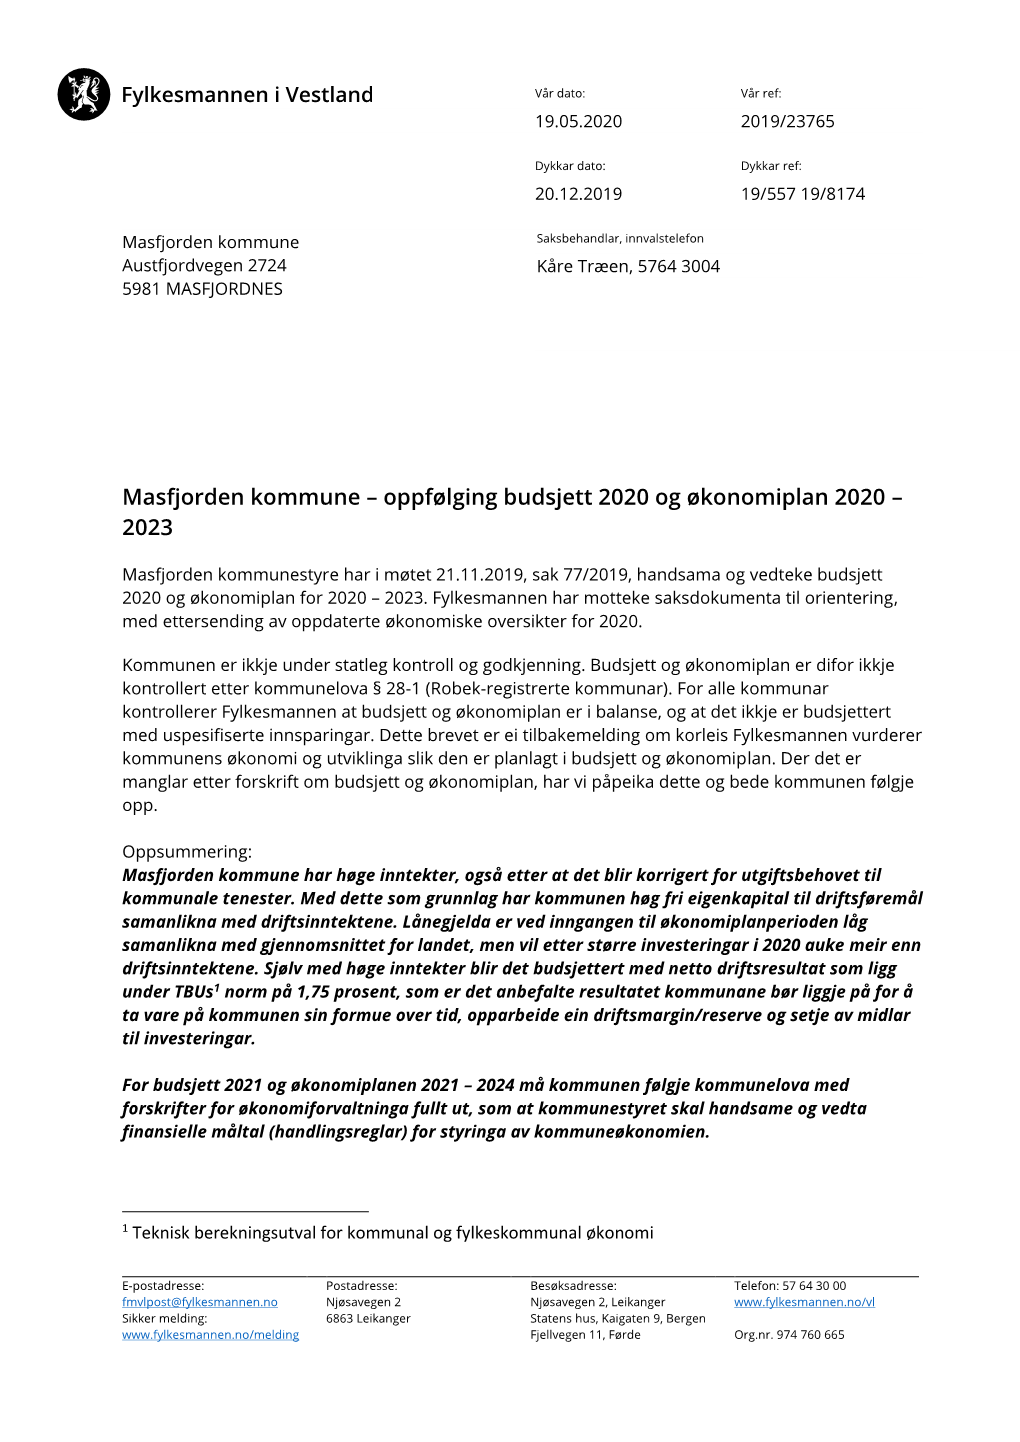 Masfjorden Kommune – Oppfølging Budsjett 2020 Og Økonomiplan 2020 – 2023